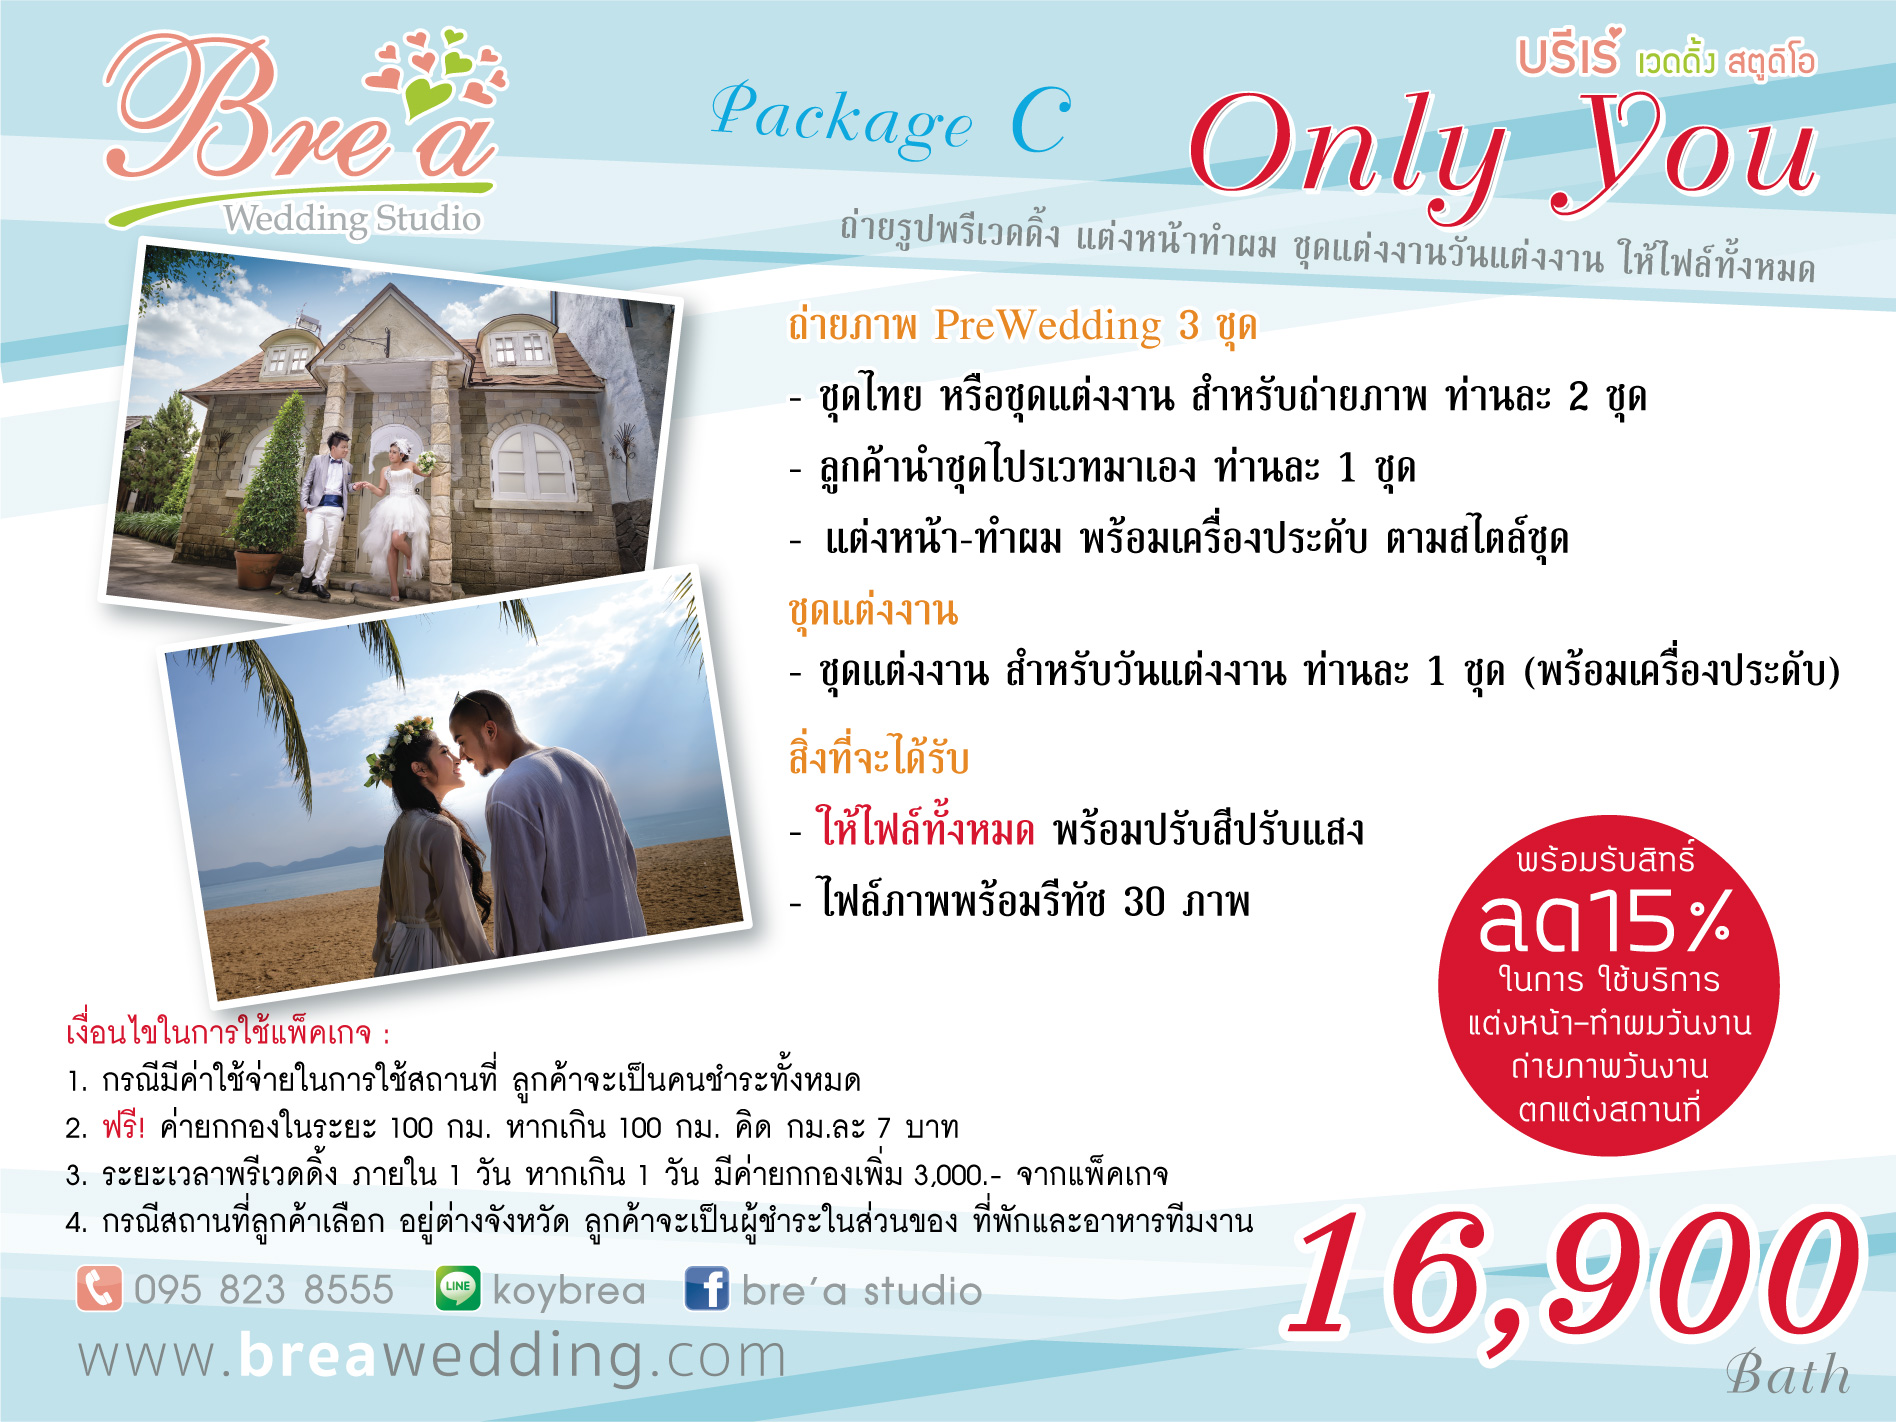 ราคาถ่ายรูปแต่งงาน ถ่ายภาพพรีเวดดิ้ง  นนทบุรี